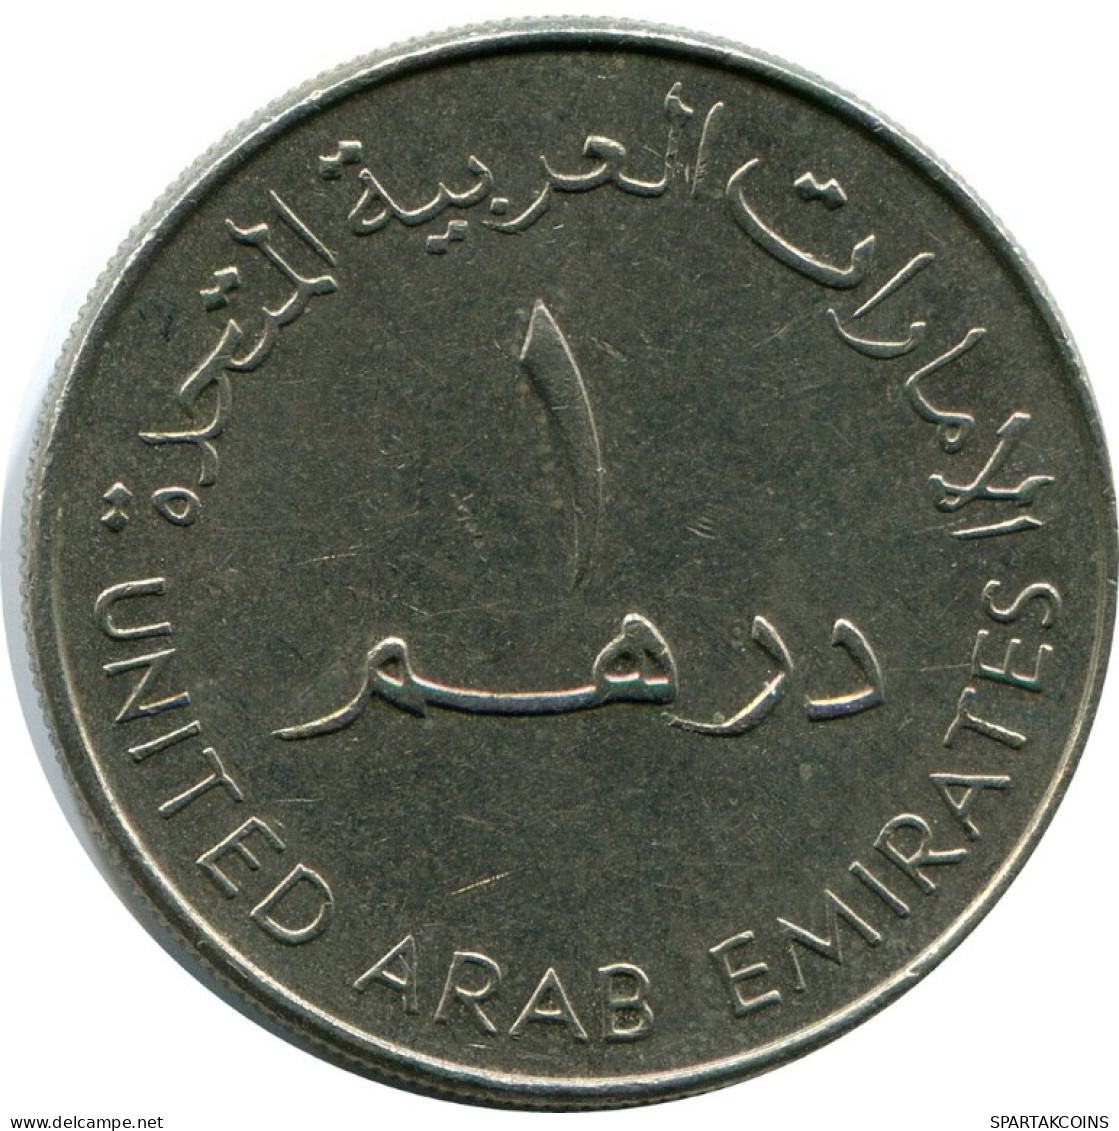 1 DIRHAM 2000 UAE UNITED ARAB EMIRATES Islamic Coin #AH998.U.A - Emirats Arabes Unis